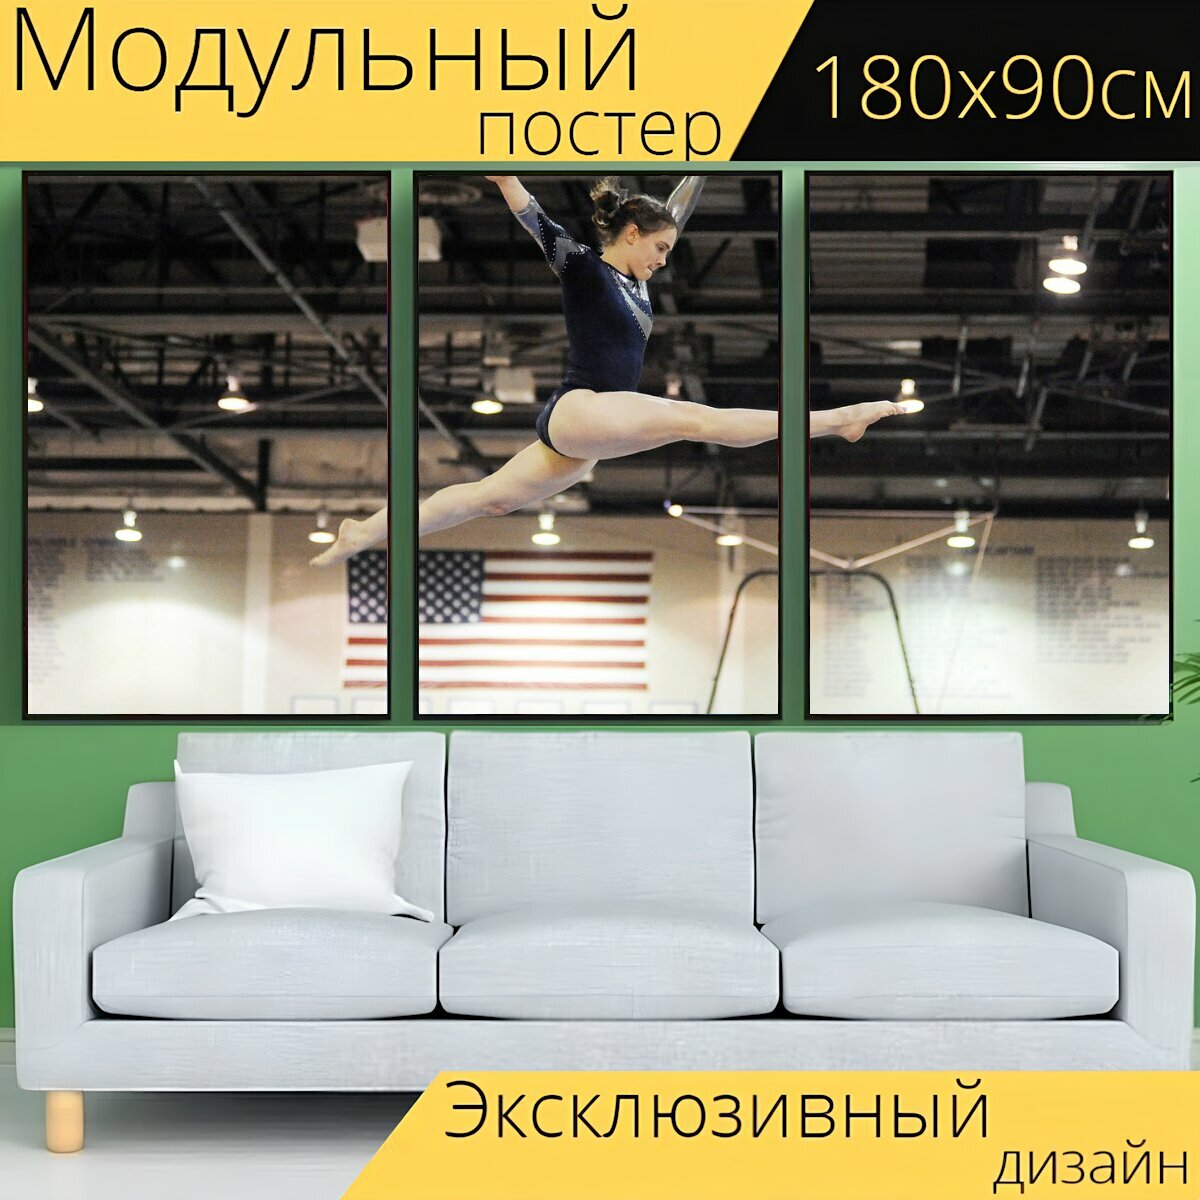 Модульный постер "Гимнастика, гимнастка, виды спорта" 180 x 90 см. для интерьера